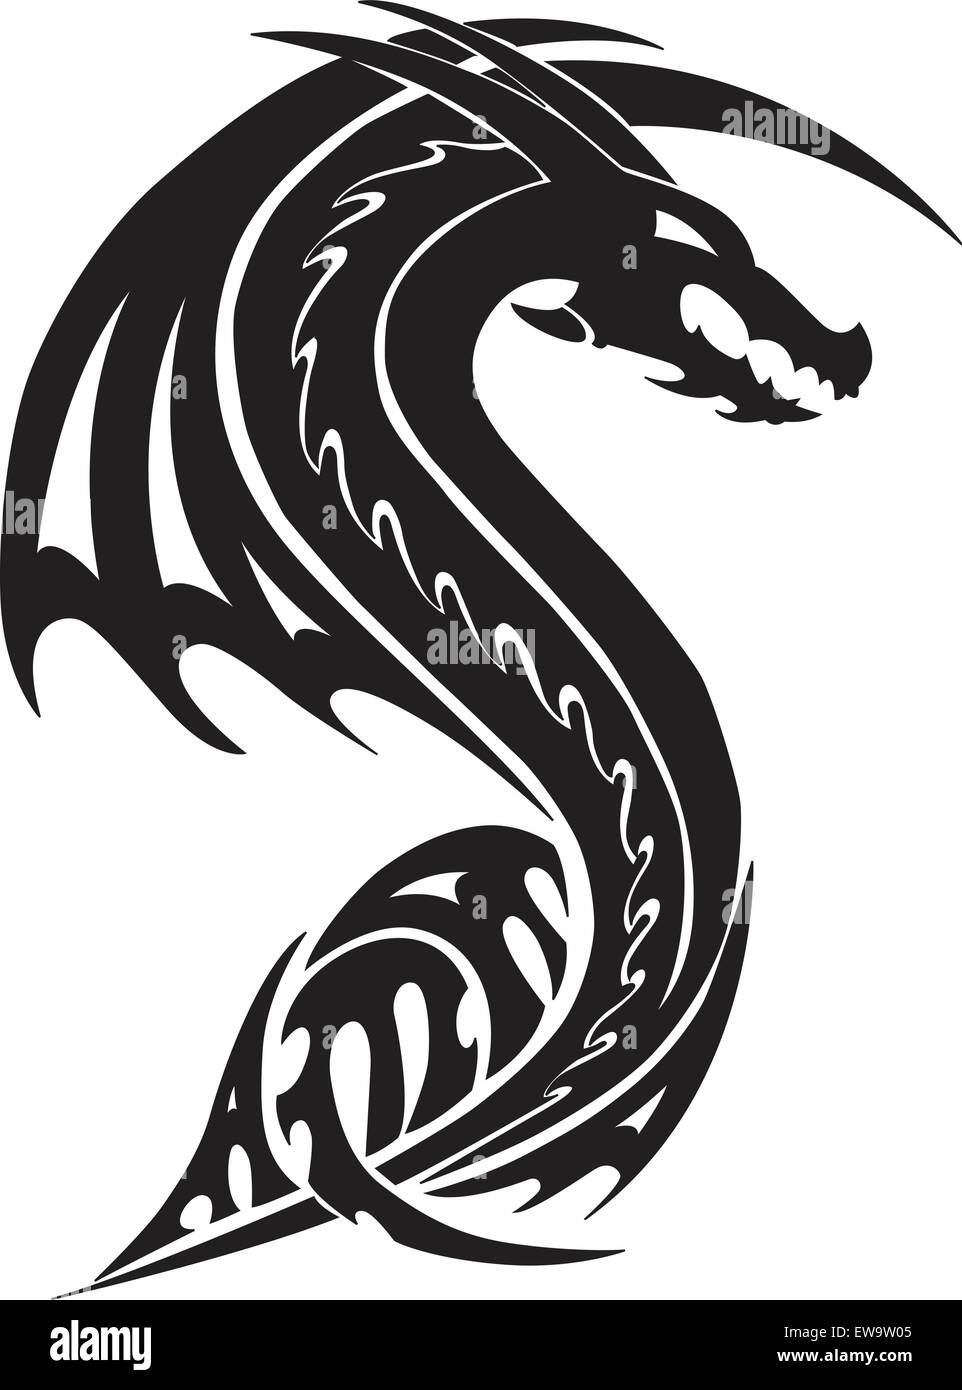 Flying dragon tattoo design, vintage engraved illustration Stock ...